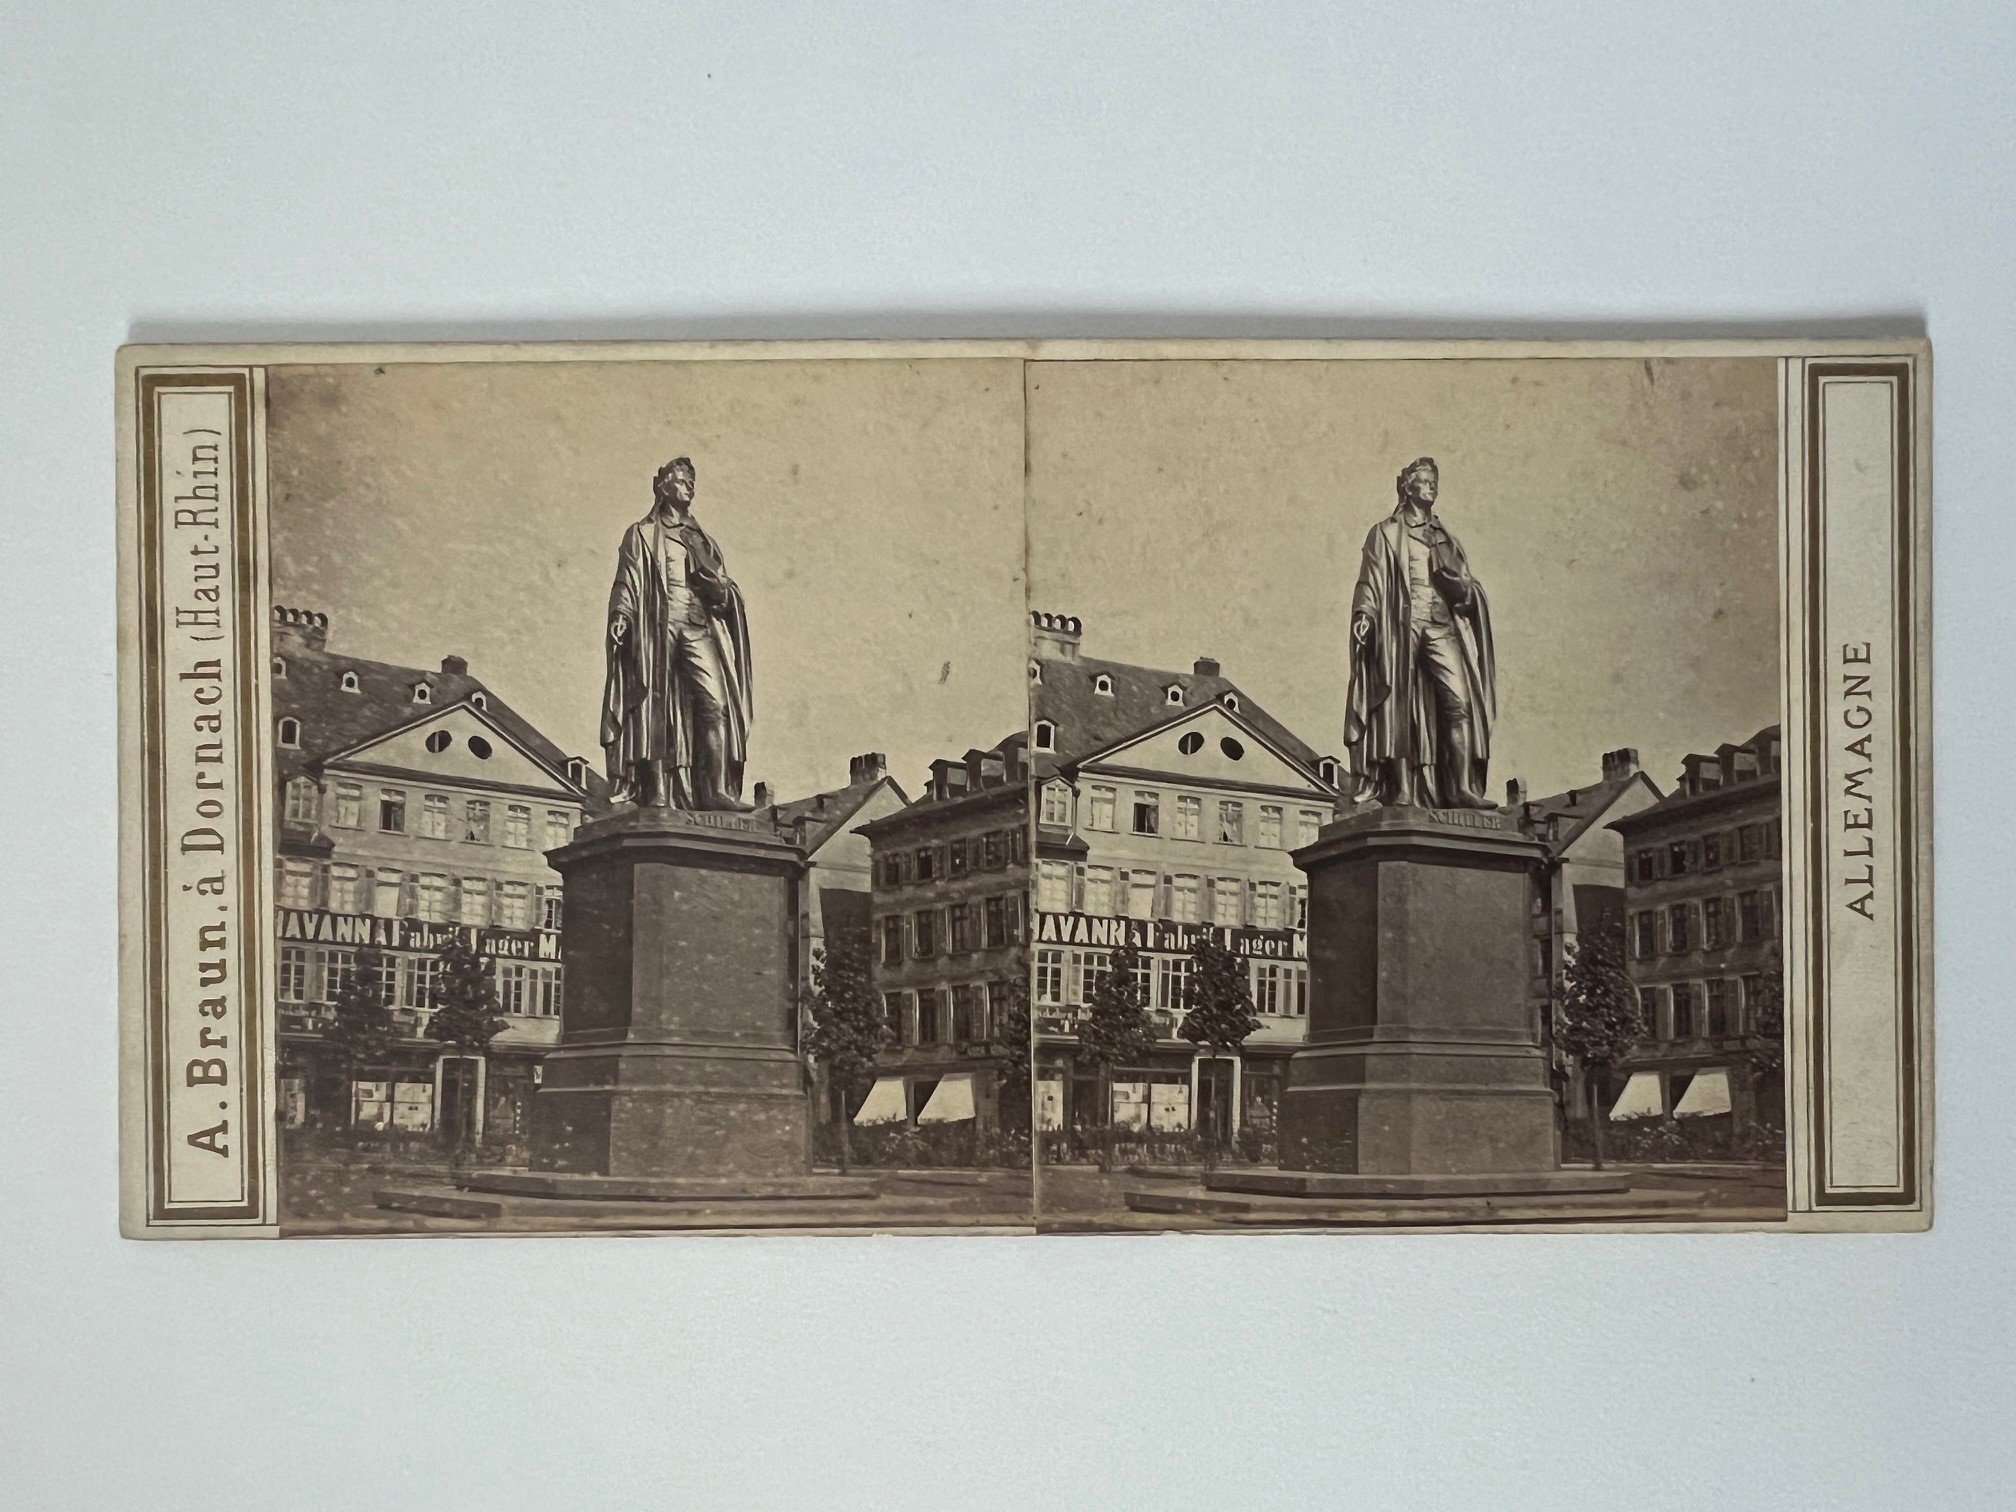 Stereobild, Adolphe Braun, Frankfurt, Schiller-Denkmal, ca. 1865. (Taunus-Rhein-Main - Regionalgeschichtliche Sammlung Dr. Stefan Naas CC BY-NC-SA)